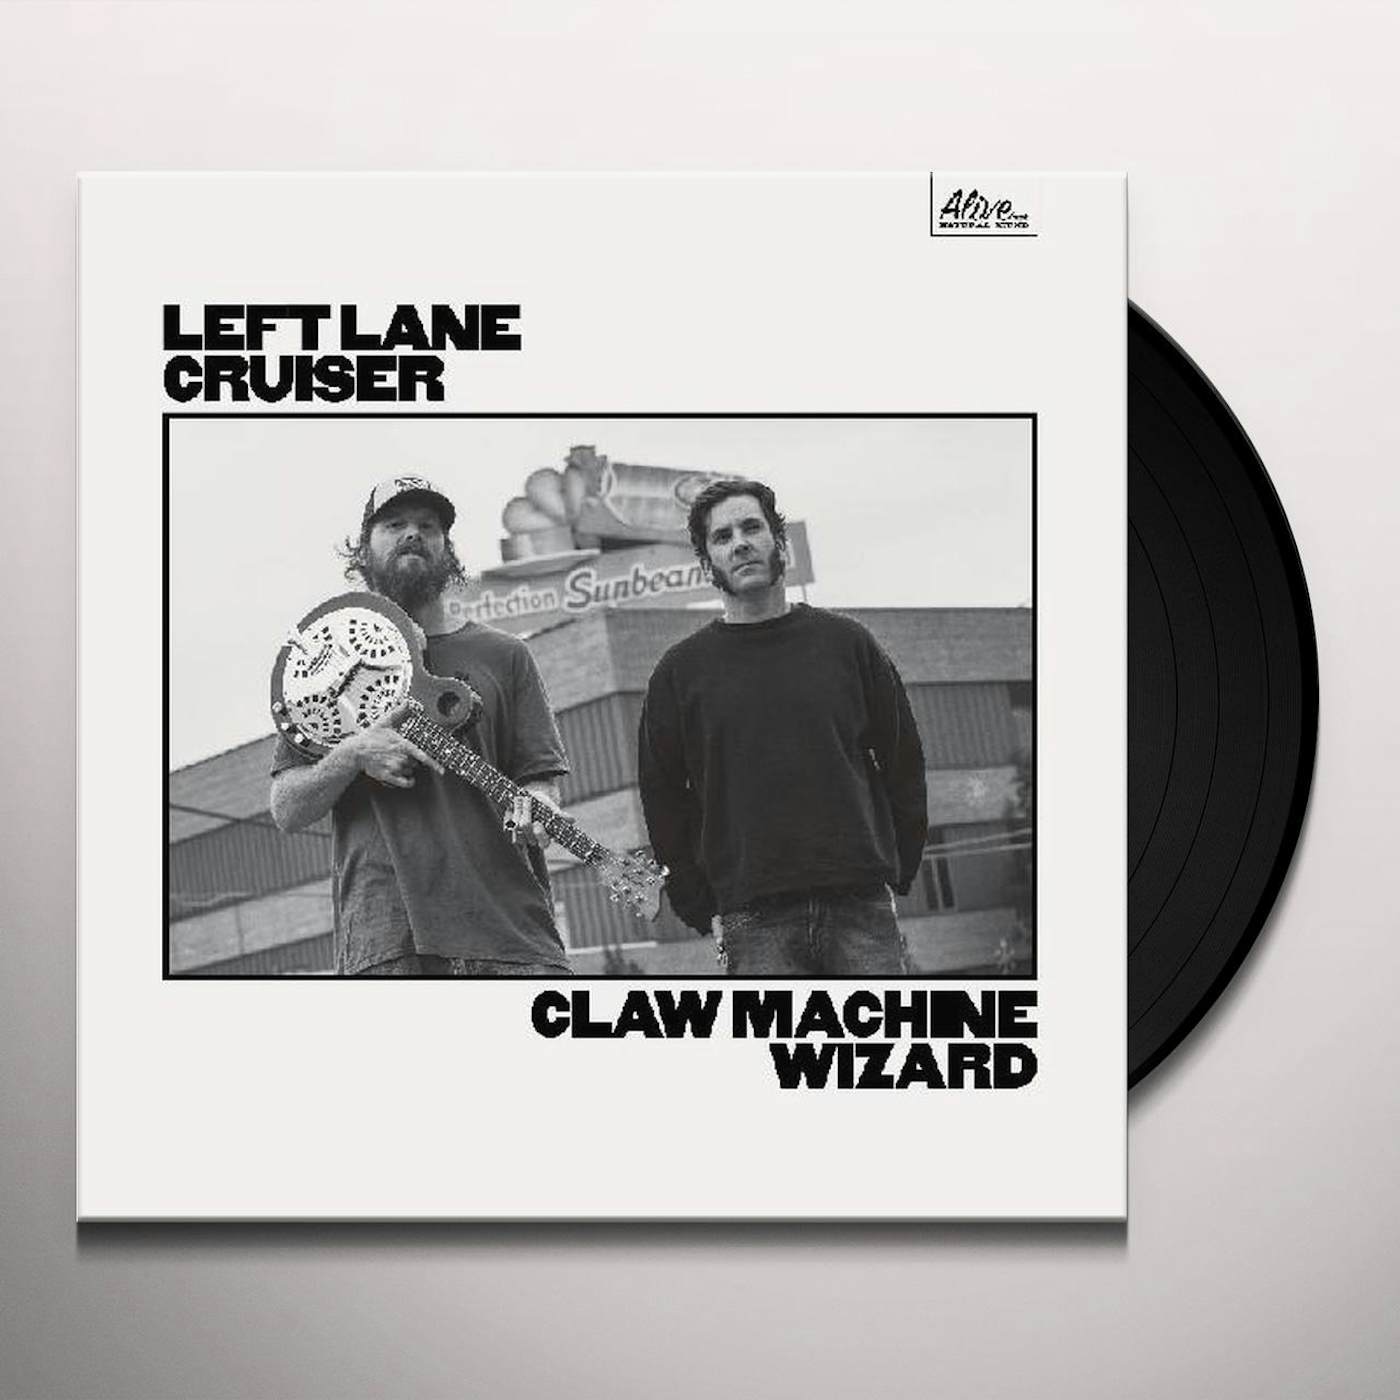 Left Lane Cruiser Claw Machine Wizard Vinyl Record